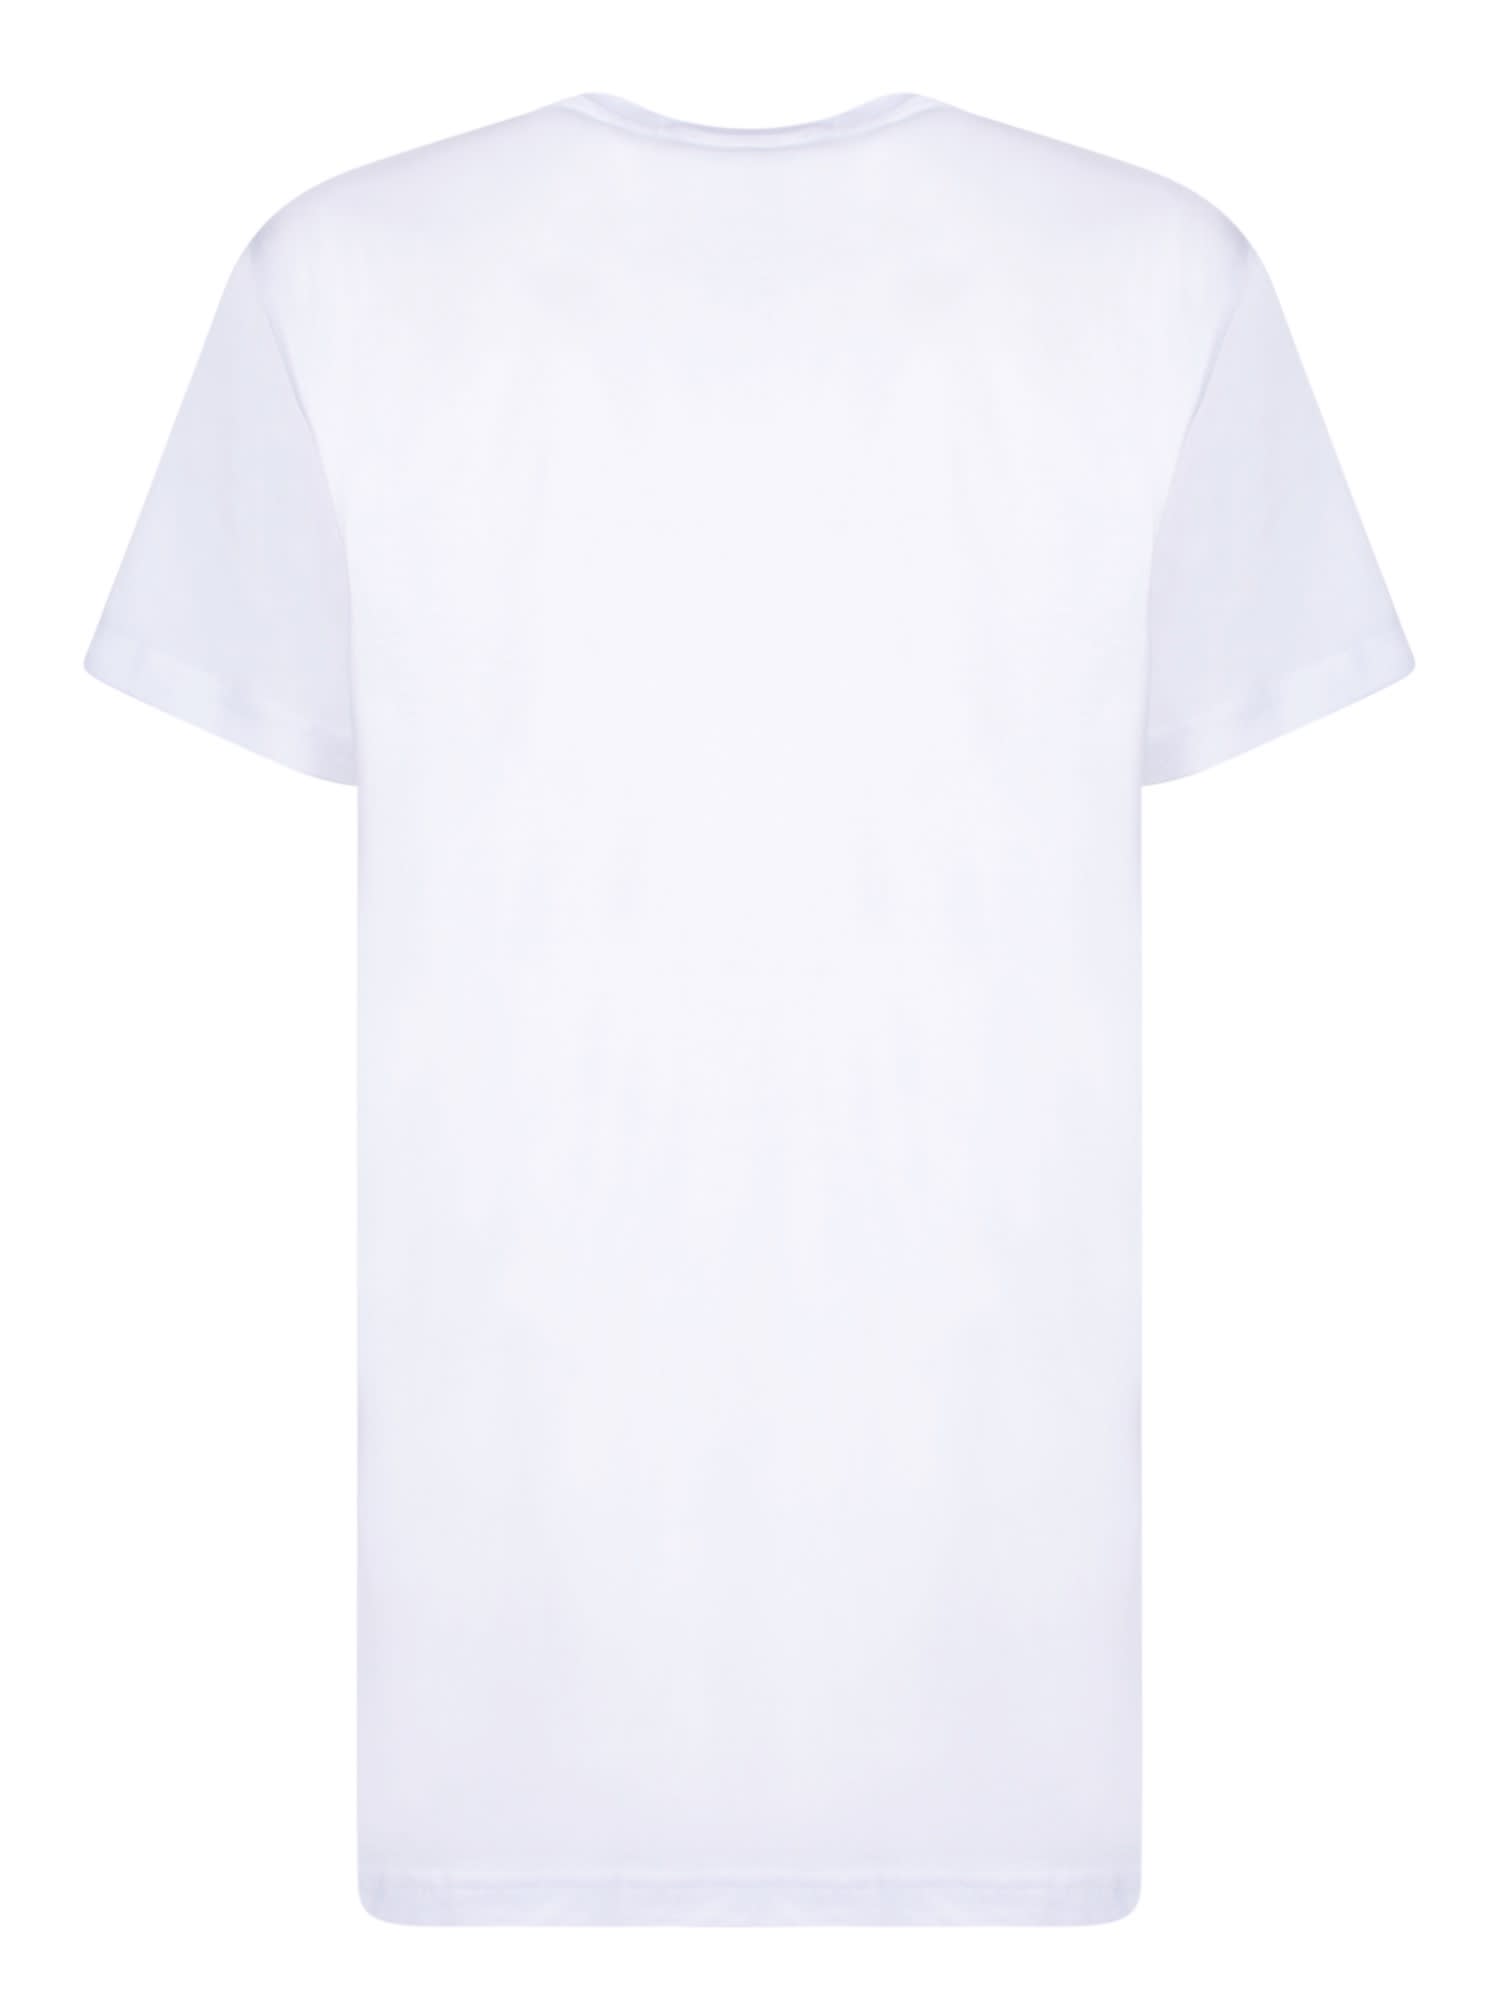 Shop Alessandro Enriquez Sicily Cotton T-shirt Black And White